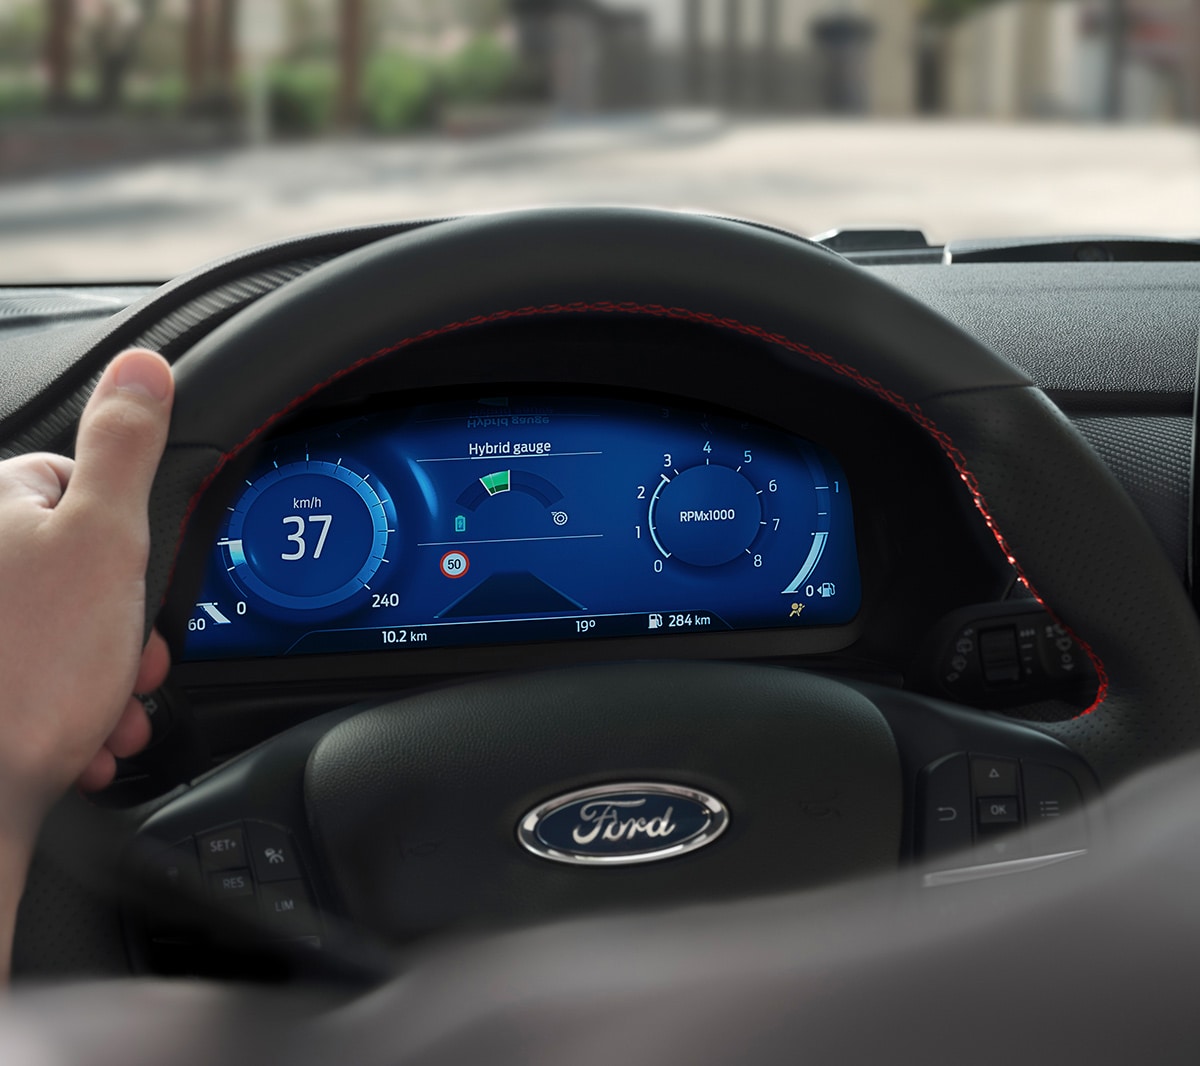 Ford Fiesta Innenraum. Detailansicht des Lenkrads und der digitalen Instrumententafel.